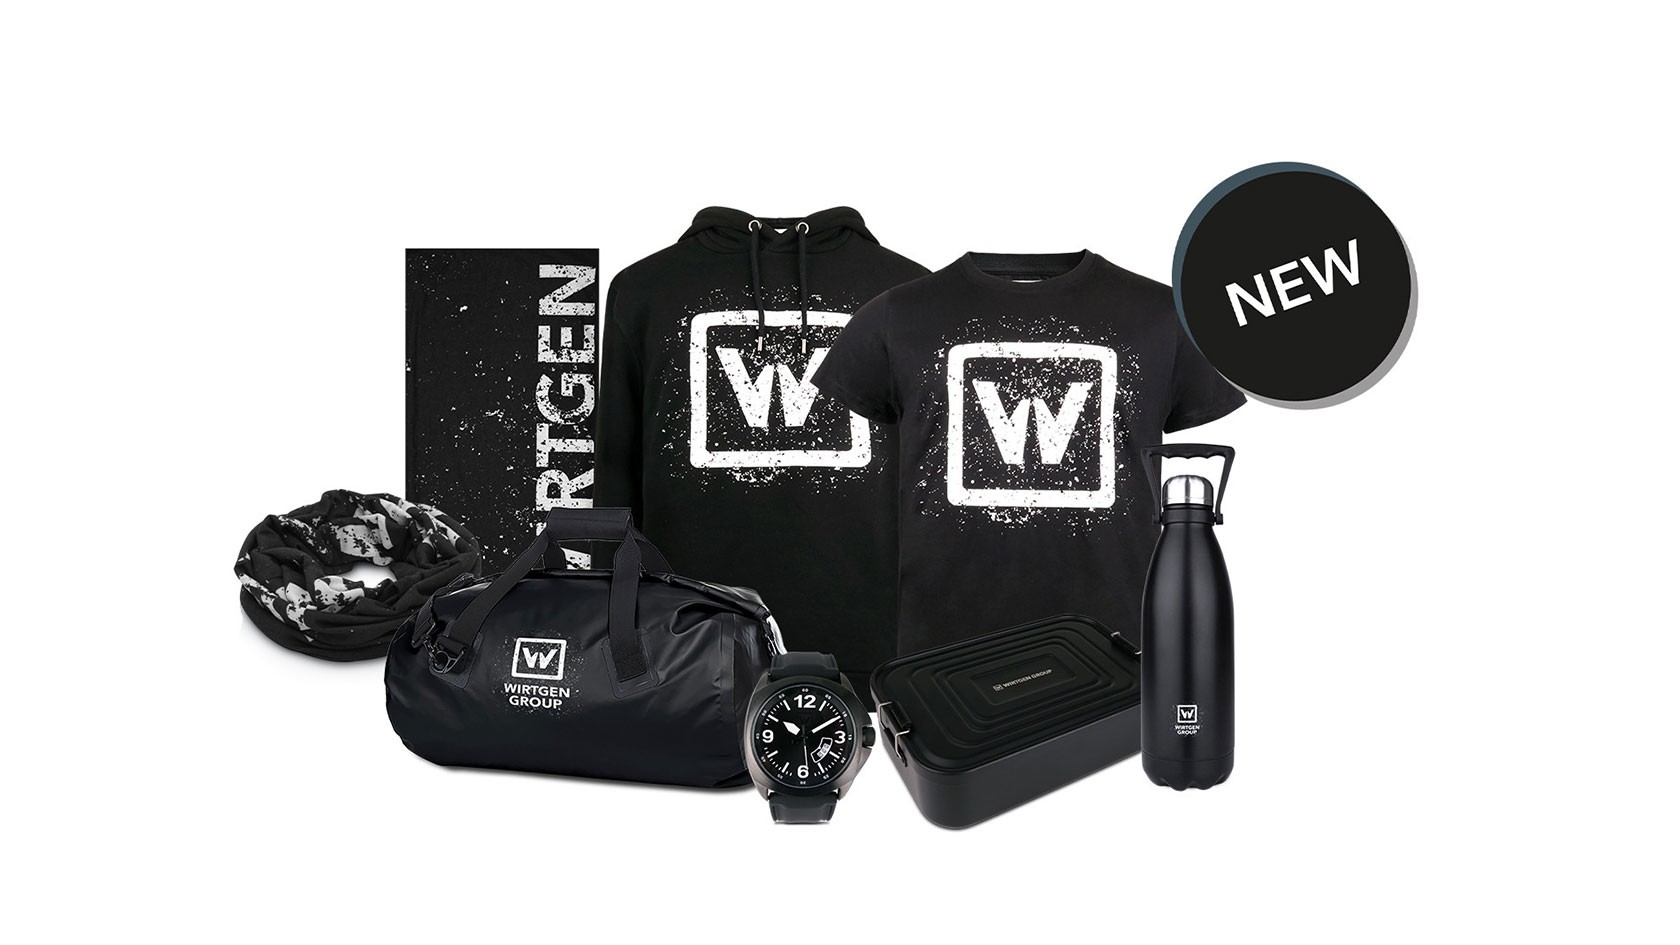 Wirtgen Group T-shirt, pullover, bag, wristwatch